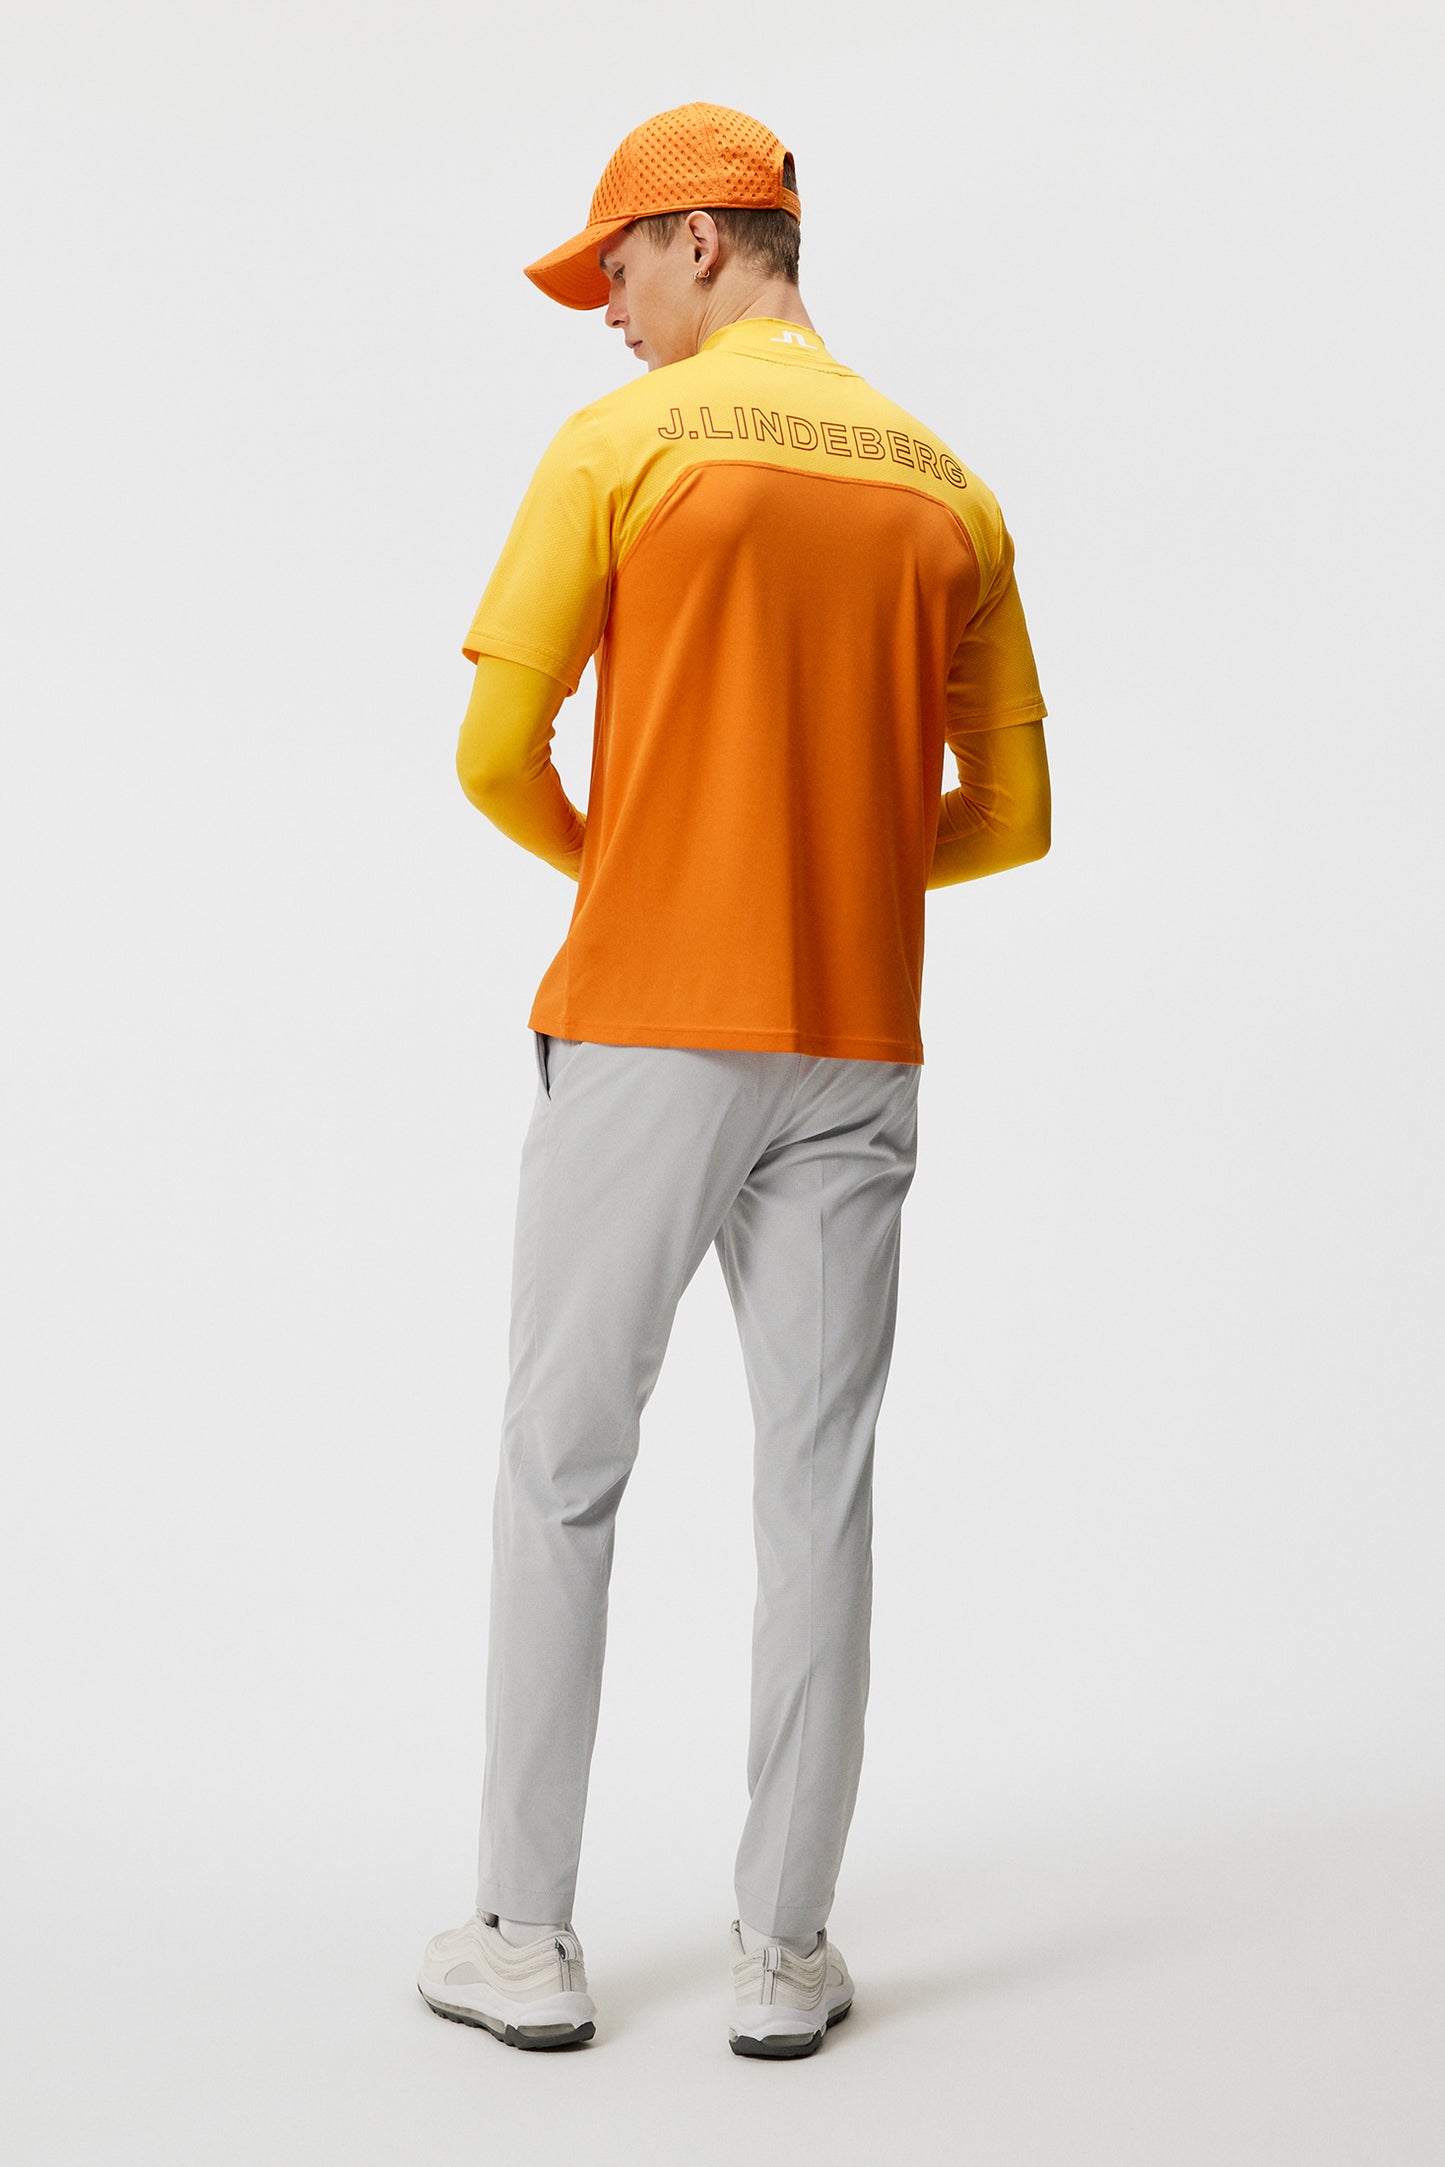 Mesh blocked T-shirt / Russet Orange